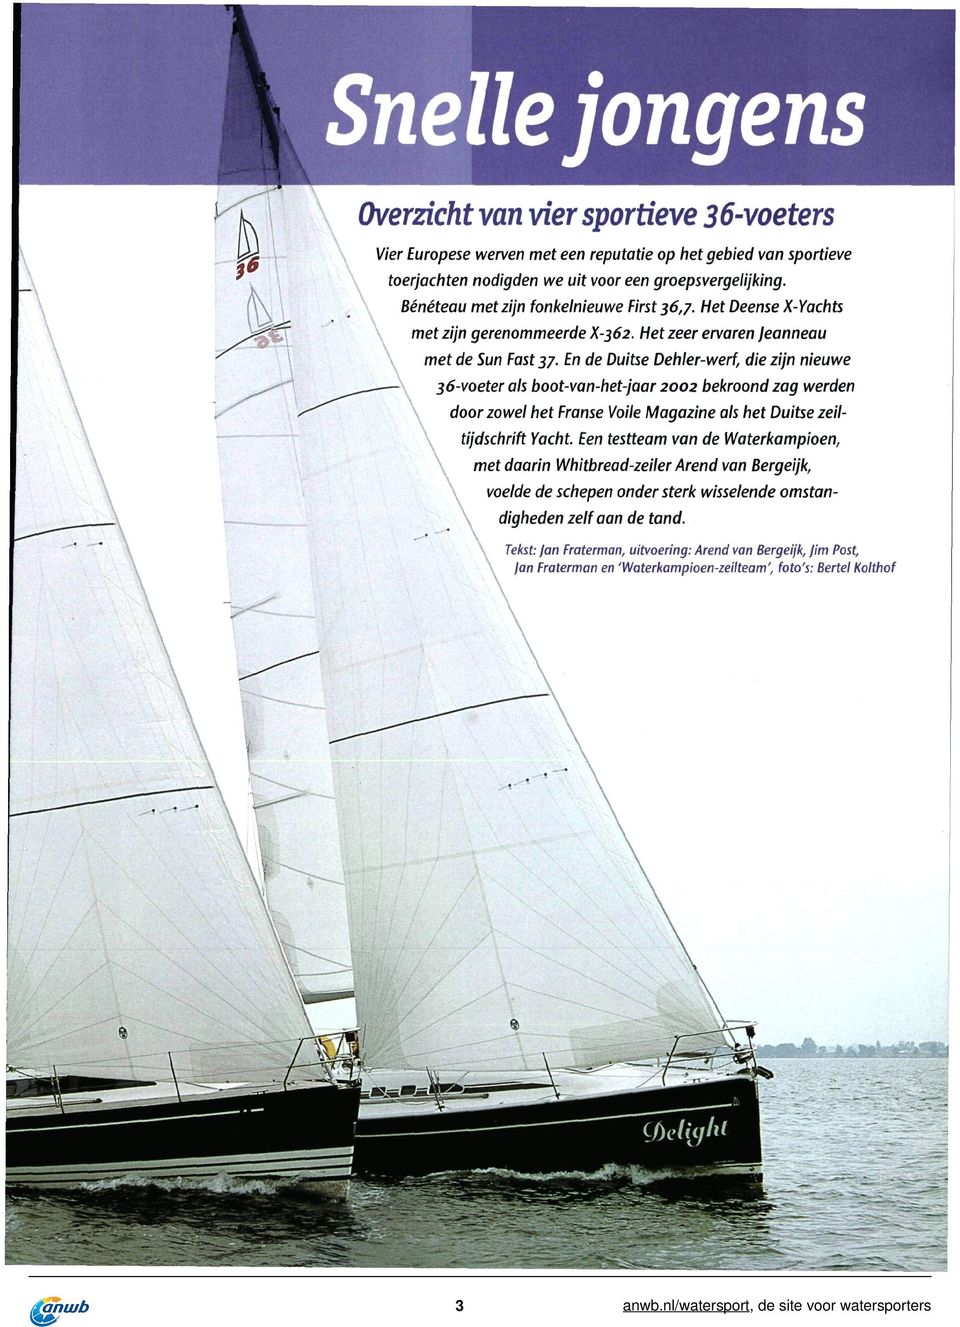 En de Duitse Dehler-werf, die zijn nieuwe 36-voeter als boot-van-het-jaar 2002 bekroond zag werden \ door zowel het Franse Voile Magazine als het Duitse zeiltijdschrift Yacht.